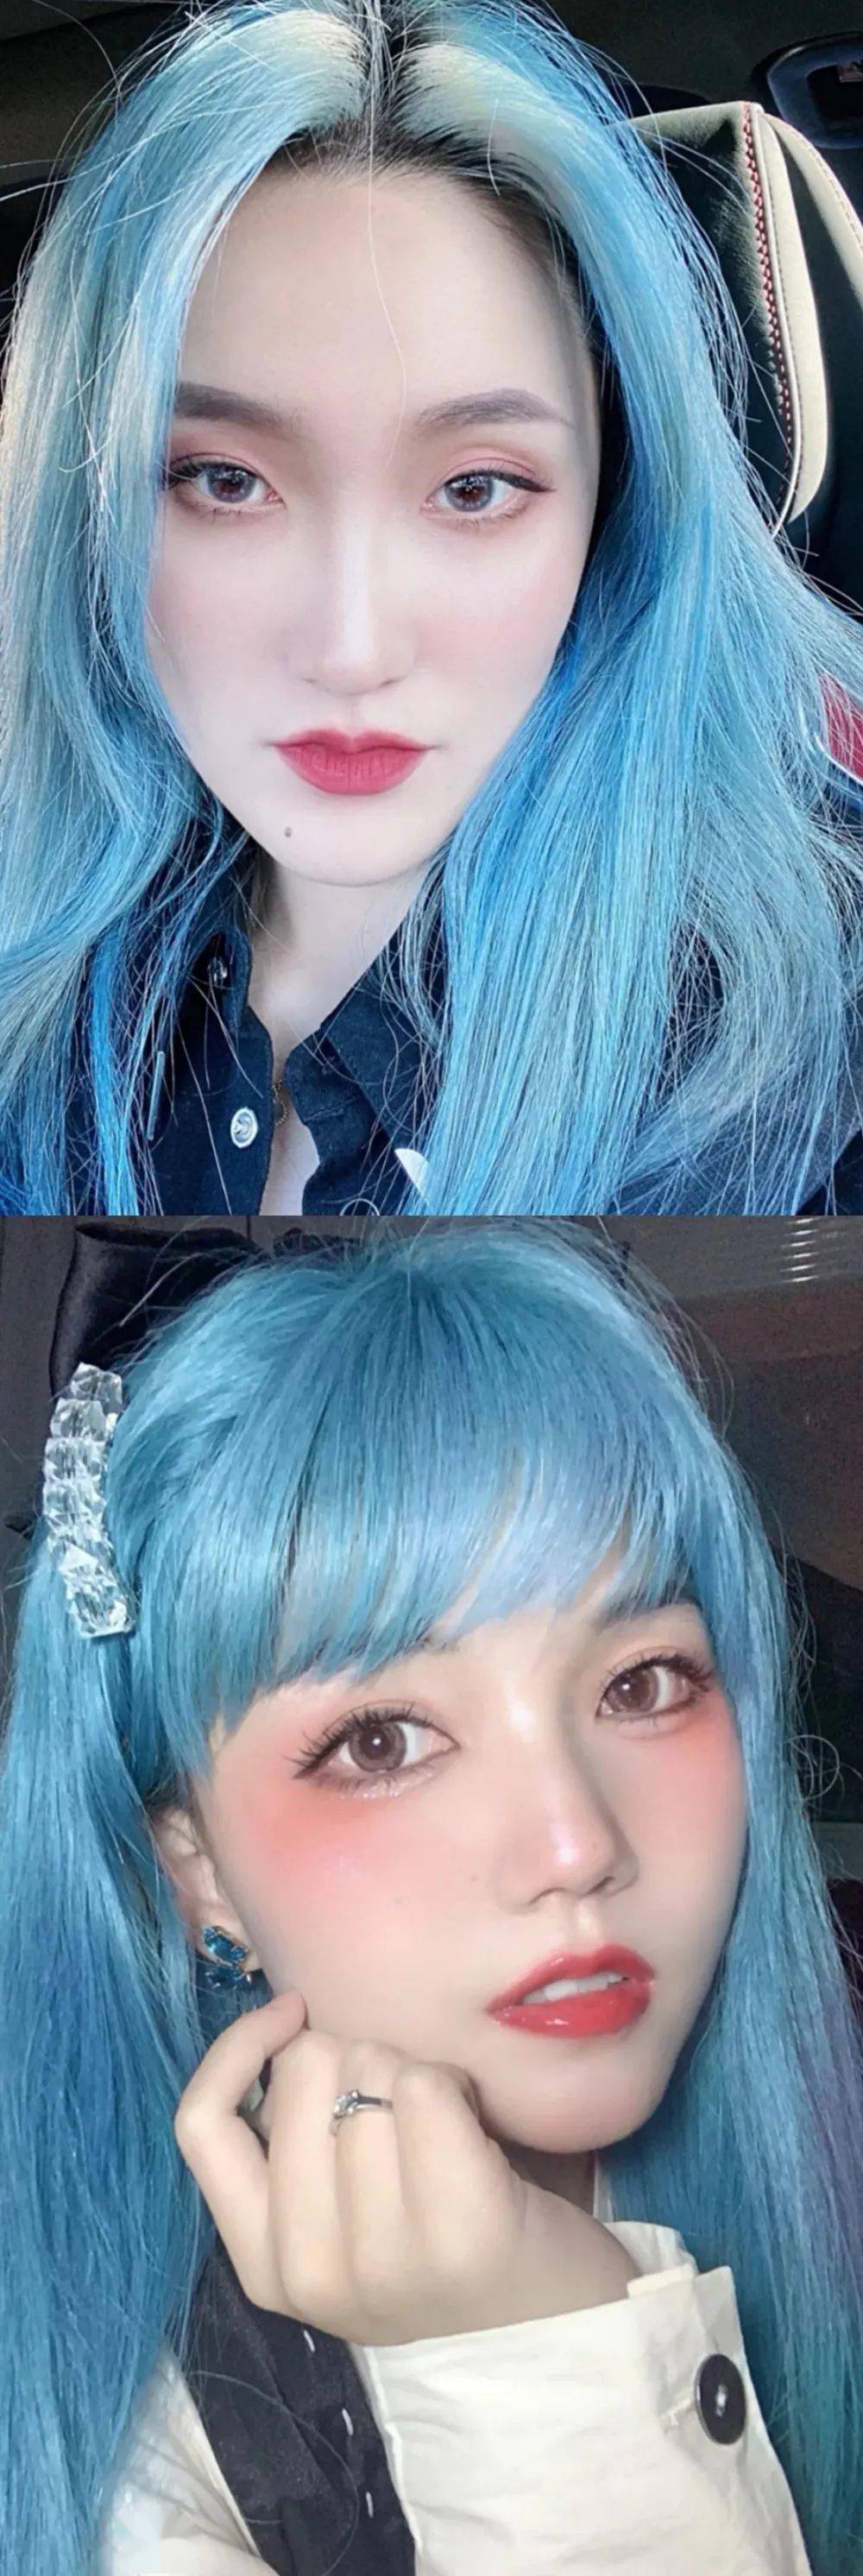 冰蓝色头发长发图片